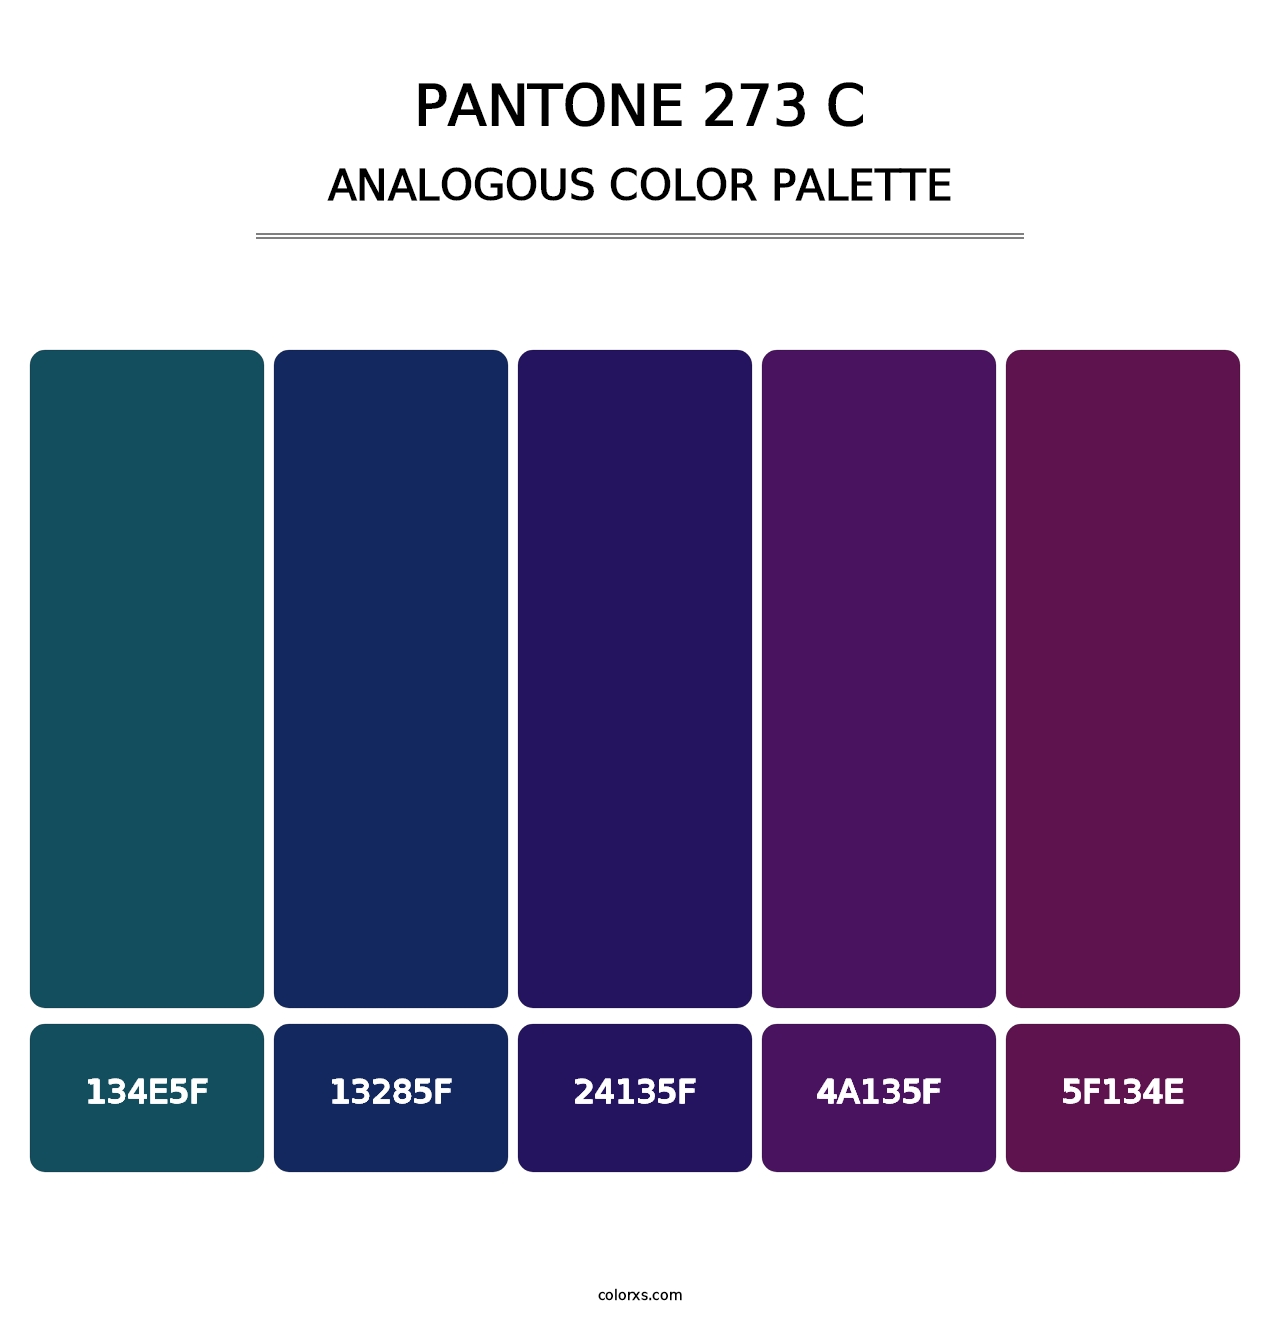 PANTONE 273 C - Analogous Color Palette